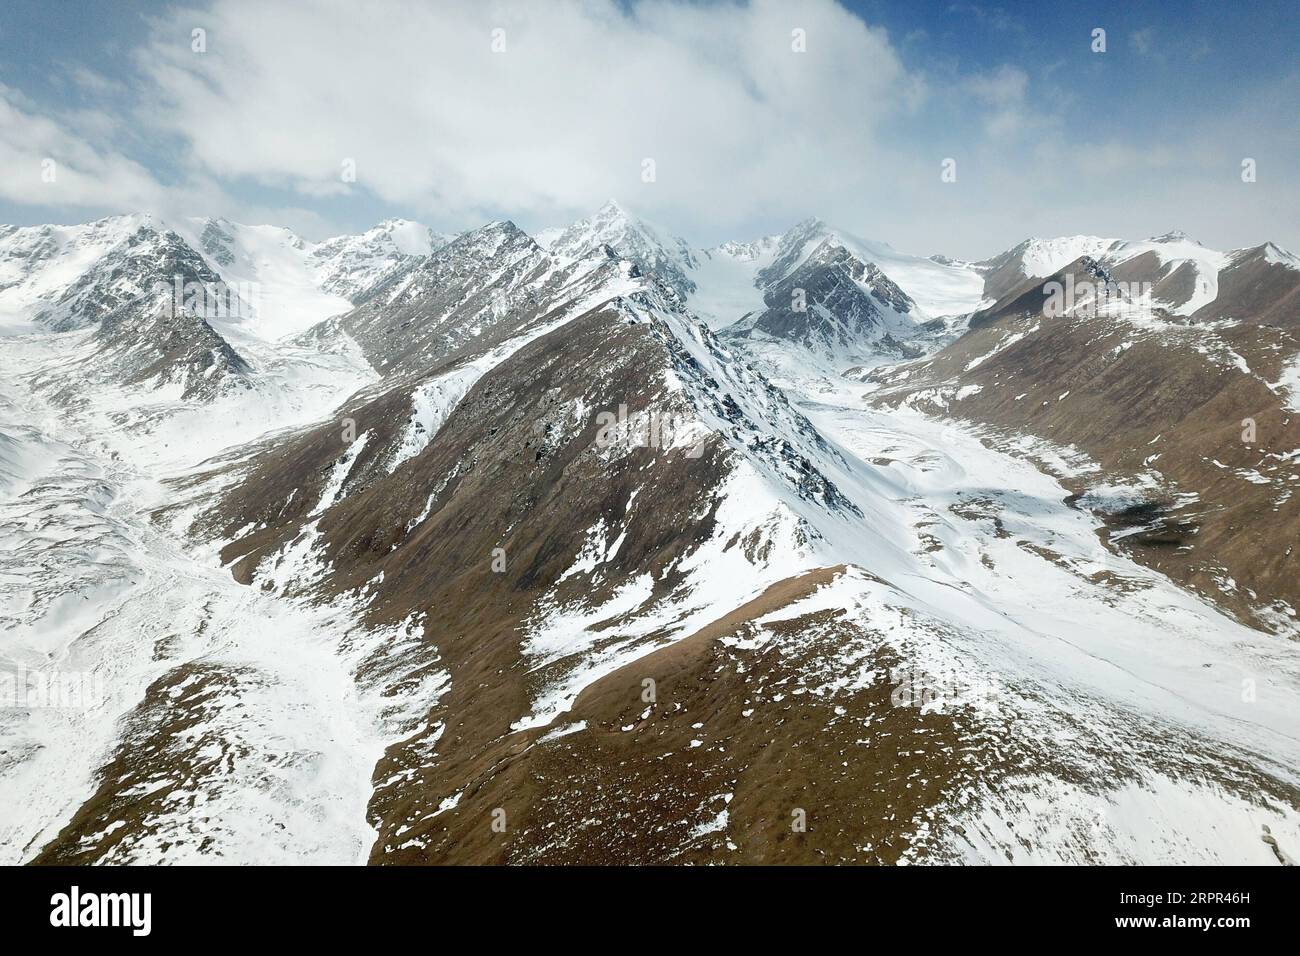 200326 -- SUNAN, 26 marzo 2020 -- foto aerea scattata il 26 marzo 2020 mostra una vista delle montagne innevate in un punto panoramico nella contea autonoma di Sunan Yugur, nella provincia del Gansu della Cina nord-occidentale. Un luogo panoramico con montagne innevate, ghiacciai, laghi e pascoli è stato aperto di recente al pubblico a Sunan. CHINA-GANSU-SUNAN-SNOW MOUNTAINS CN FANXPEISHEN PUBLICATIONXNOTXINXCHN Foto Stock